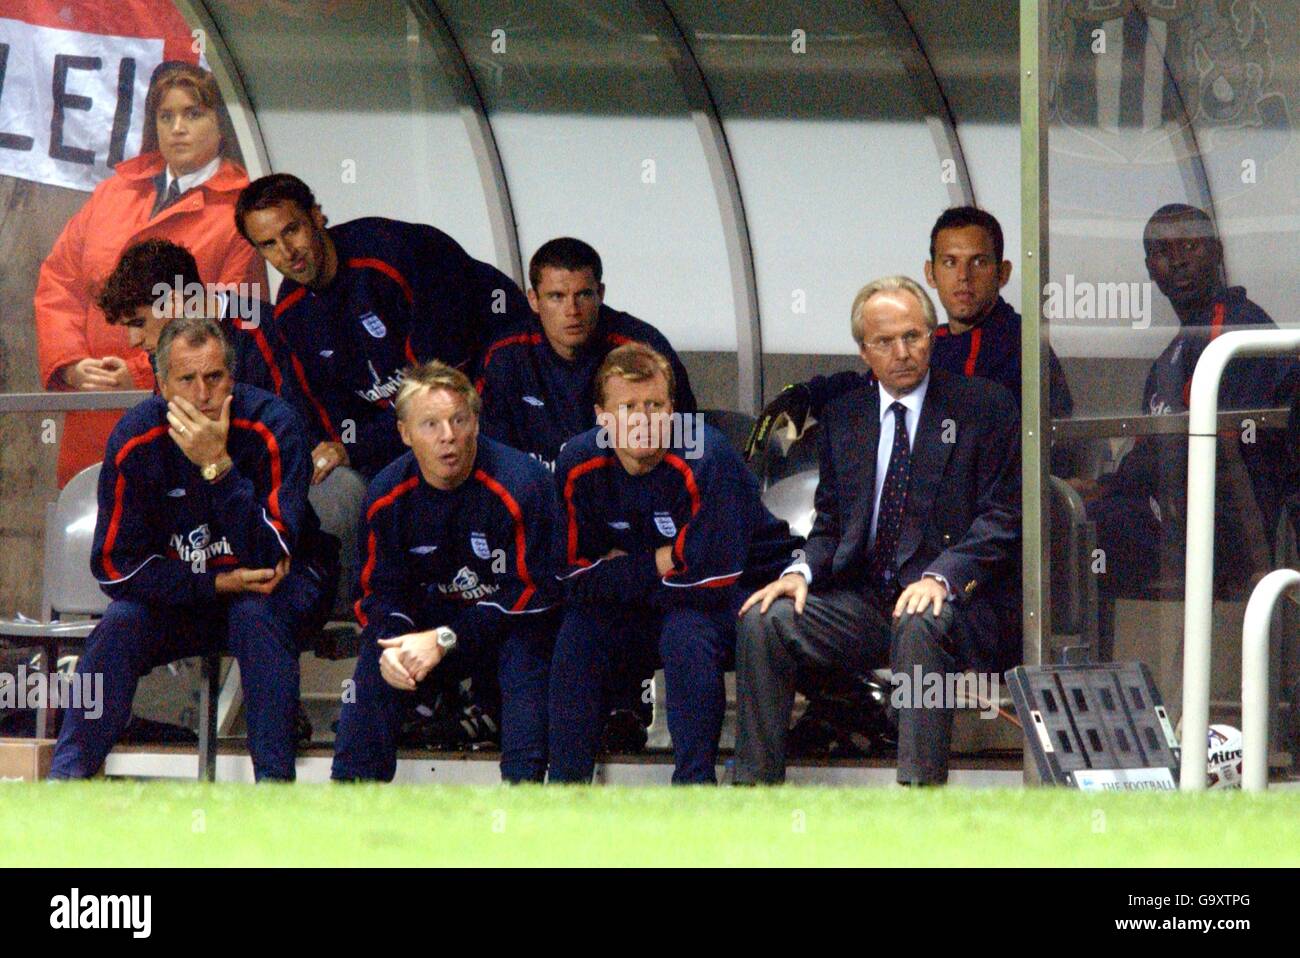 (R-L) Sven Goran Eriksson, directeur de l'Angleterre, et ses entraîneurs Steve McClaren, Sammy Lee et Ray Clemence regardent le match du dugout Banque D'Images